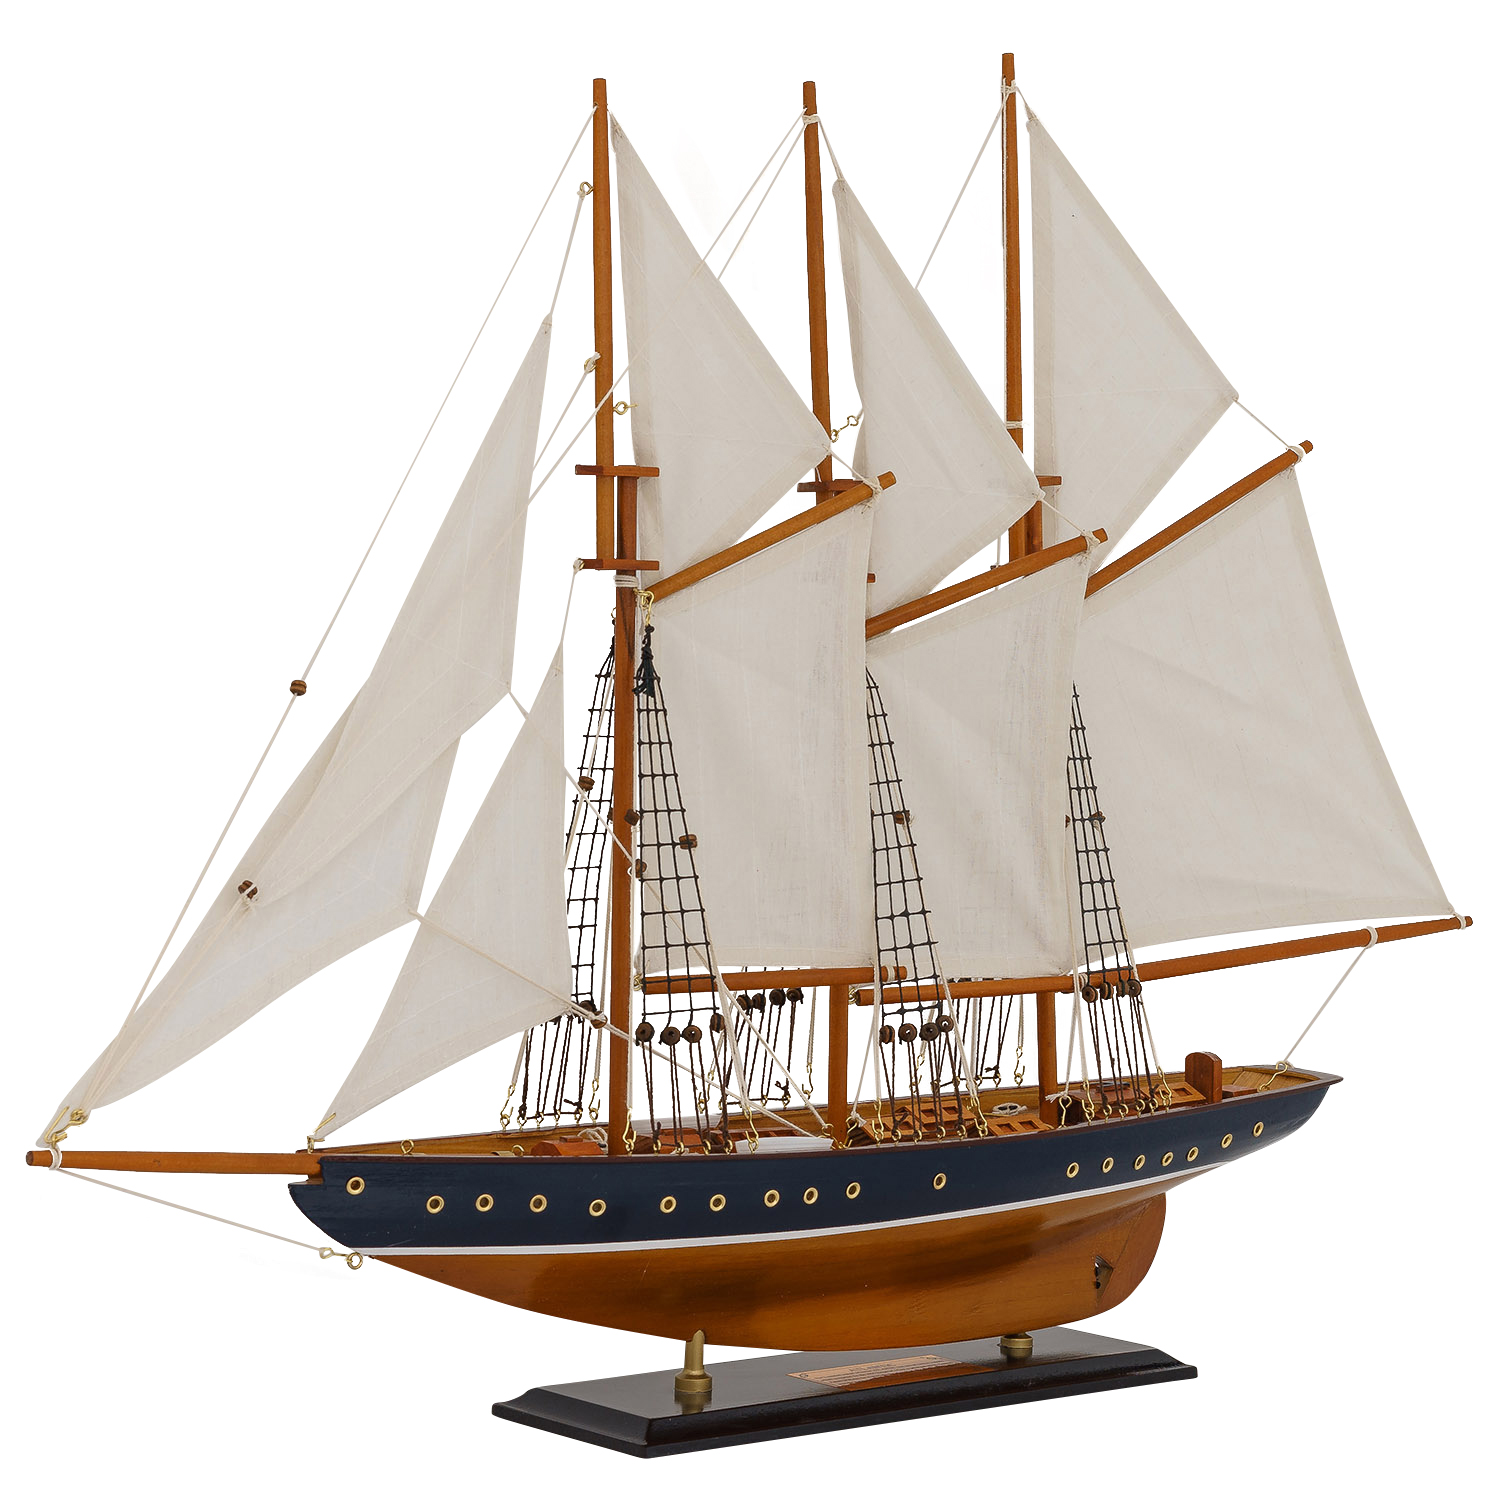 Modellschiff Atlantic Schiff Segelschiff Maritim Deko Antik-Stil kein Bausatz 